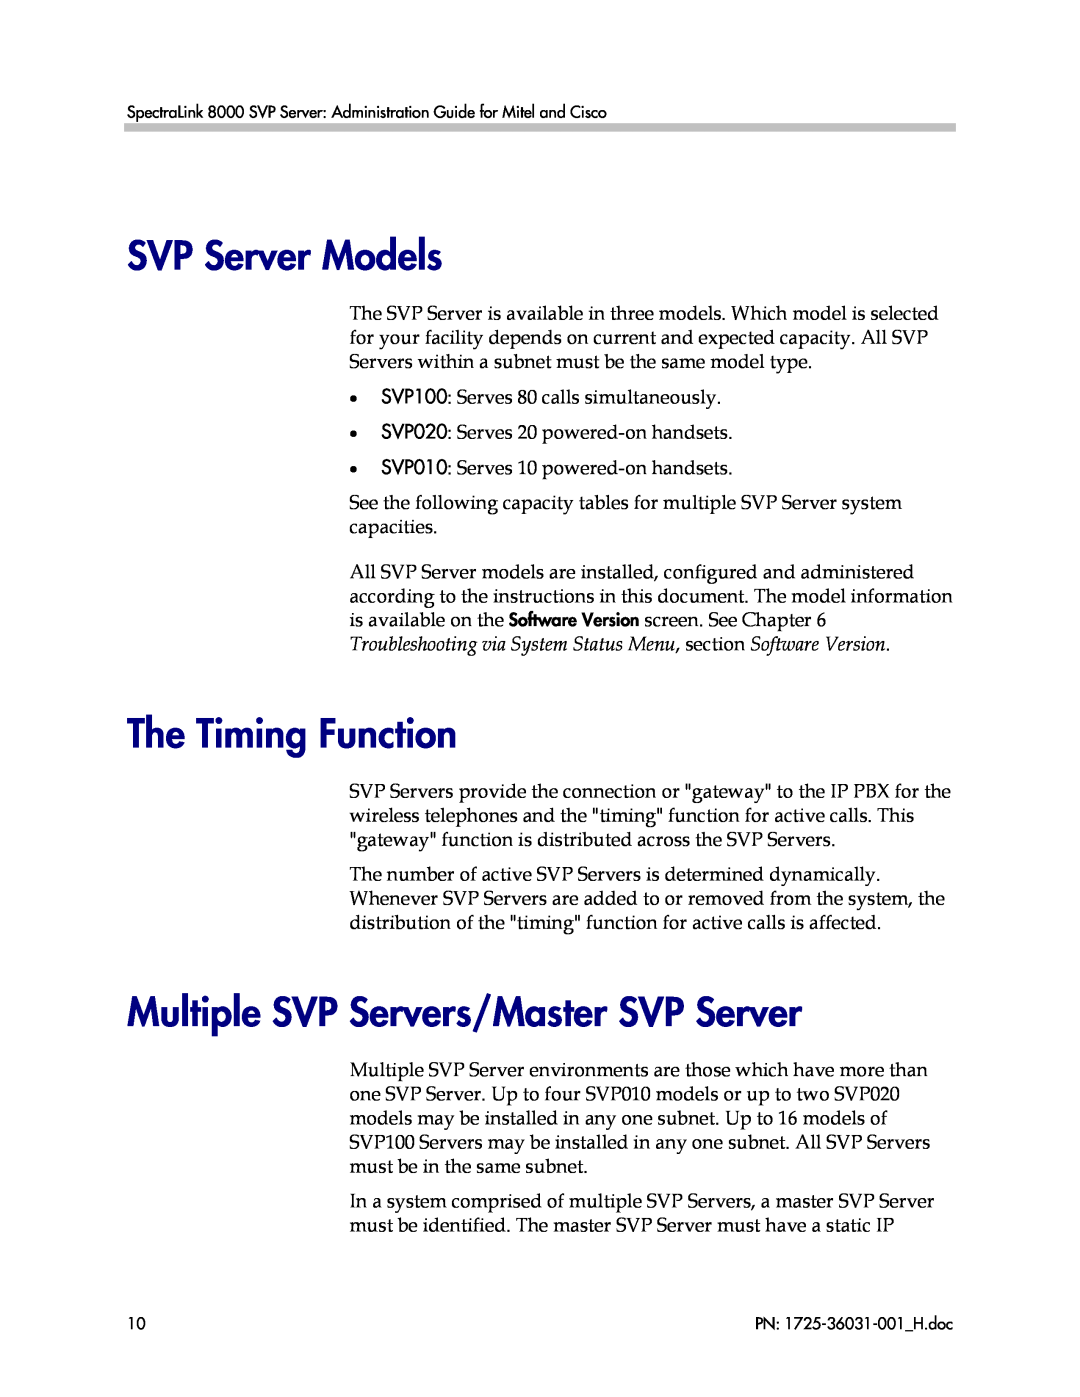 Polycom VP010, 1725-36031-001 manual SVP Server Models, The Timing Function, Multiple SVP Servers/Master SVP Server 